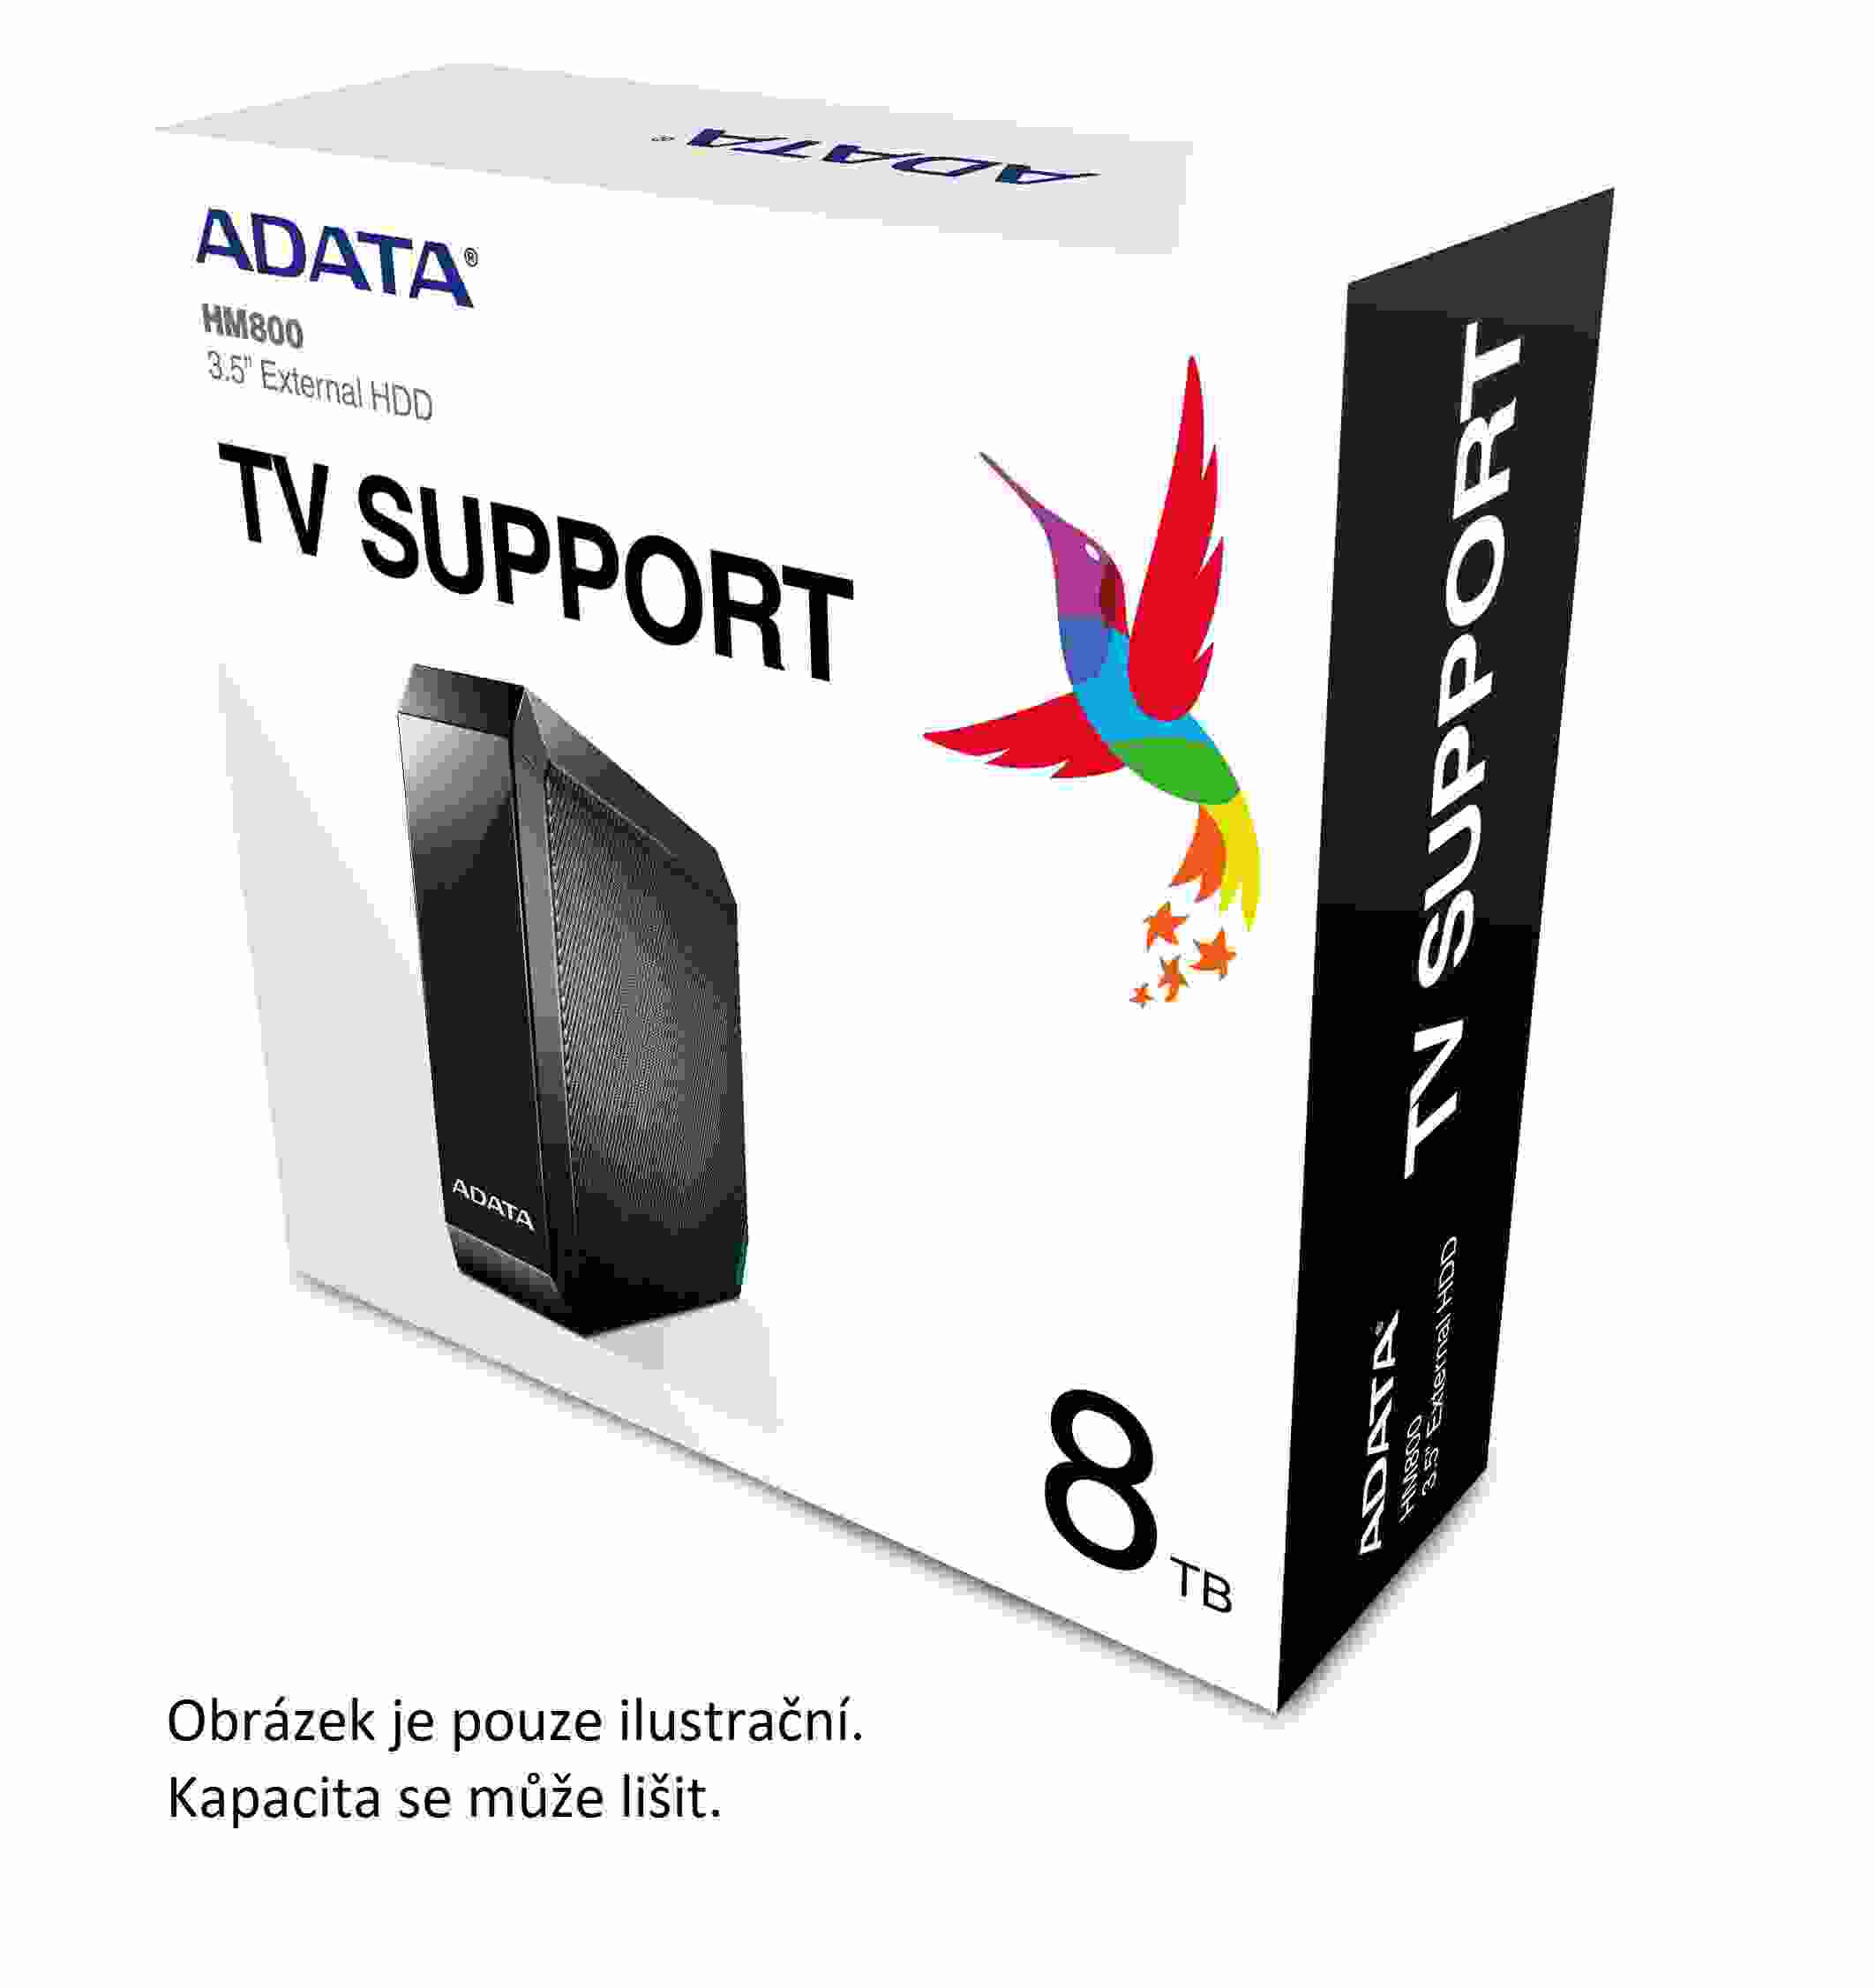 Externý pevný disk ADATA 6 TB 3.5